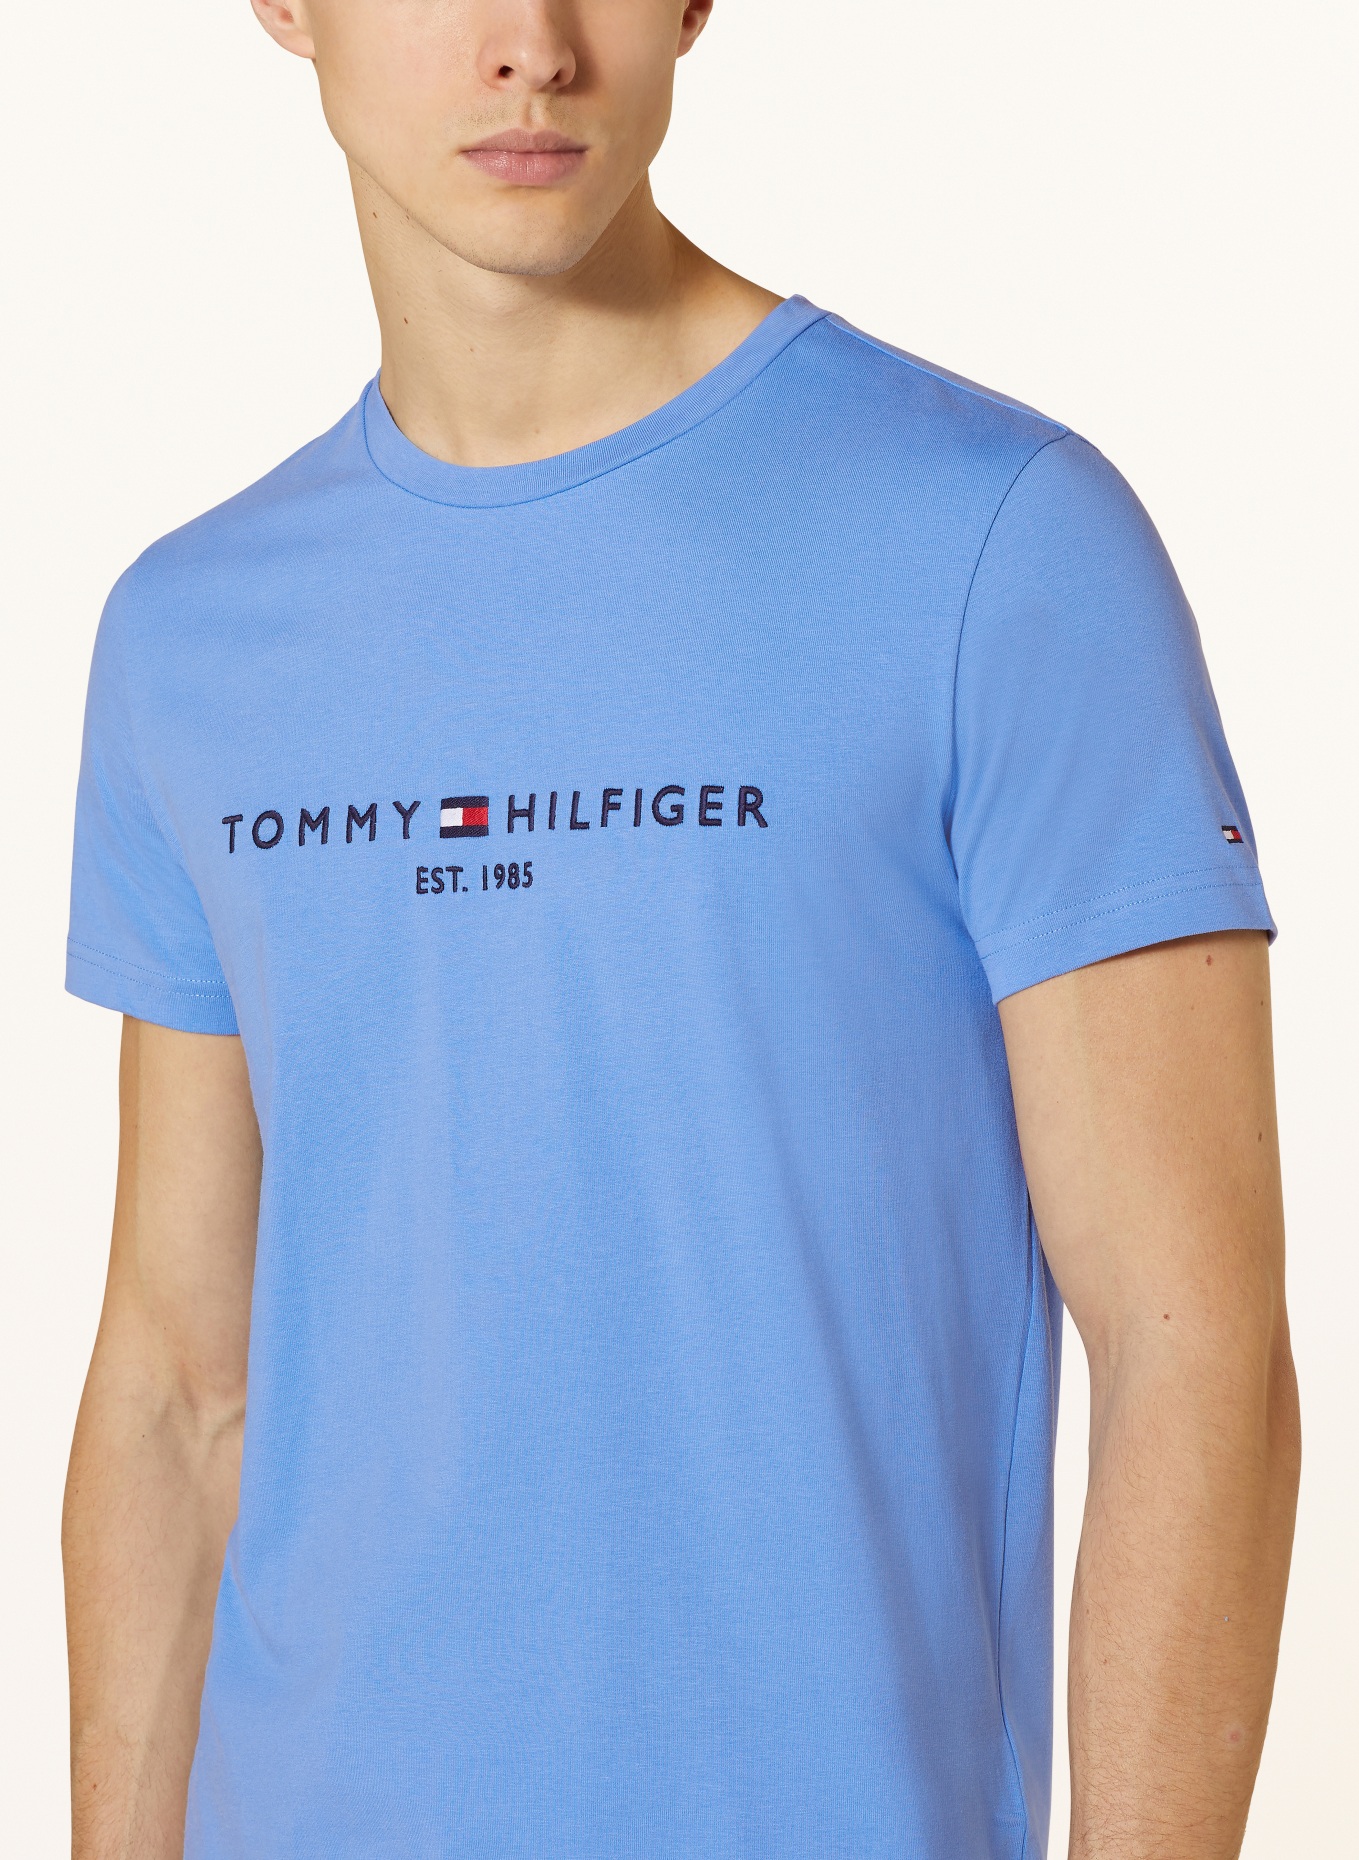 TOMMY HILFIGER T-Shirt in hellblau